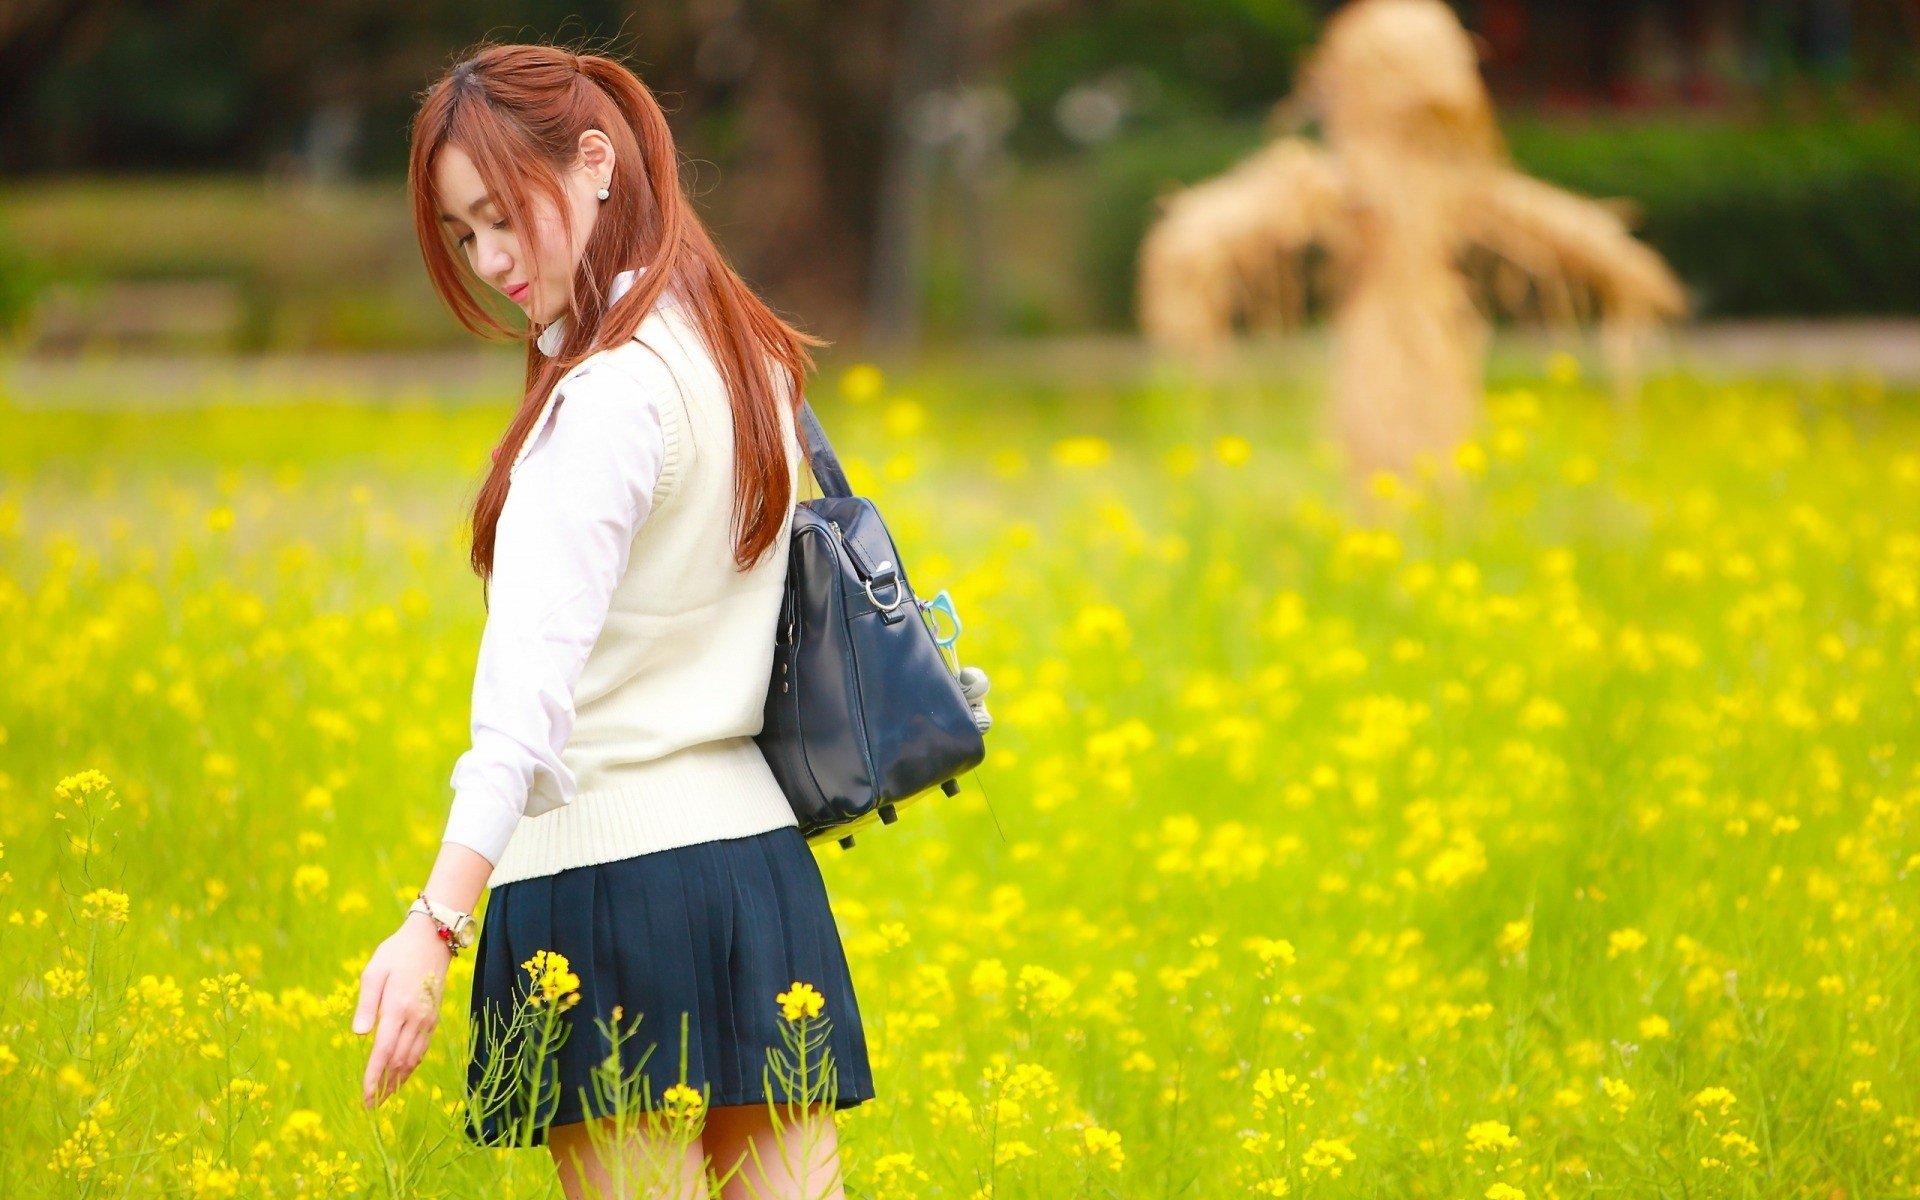 Woman Brunette Walks On The Field Of Yellow Flowers 